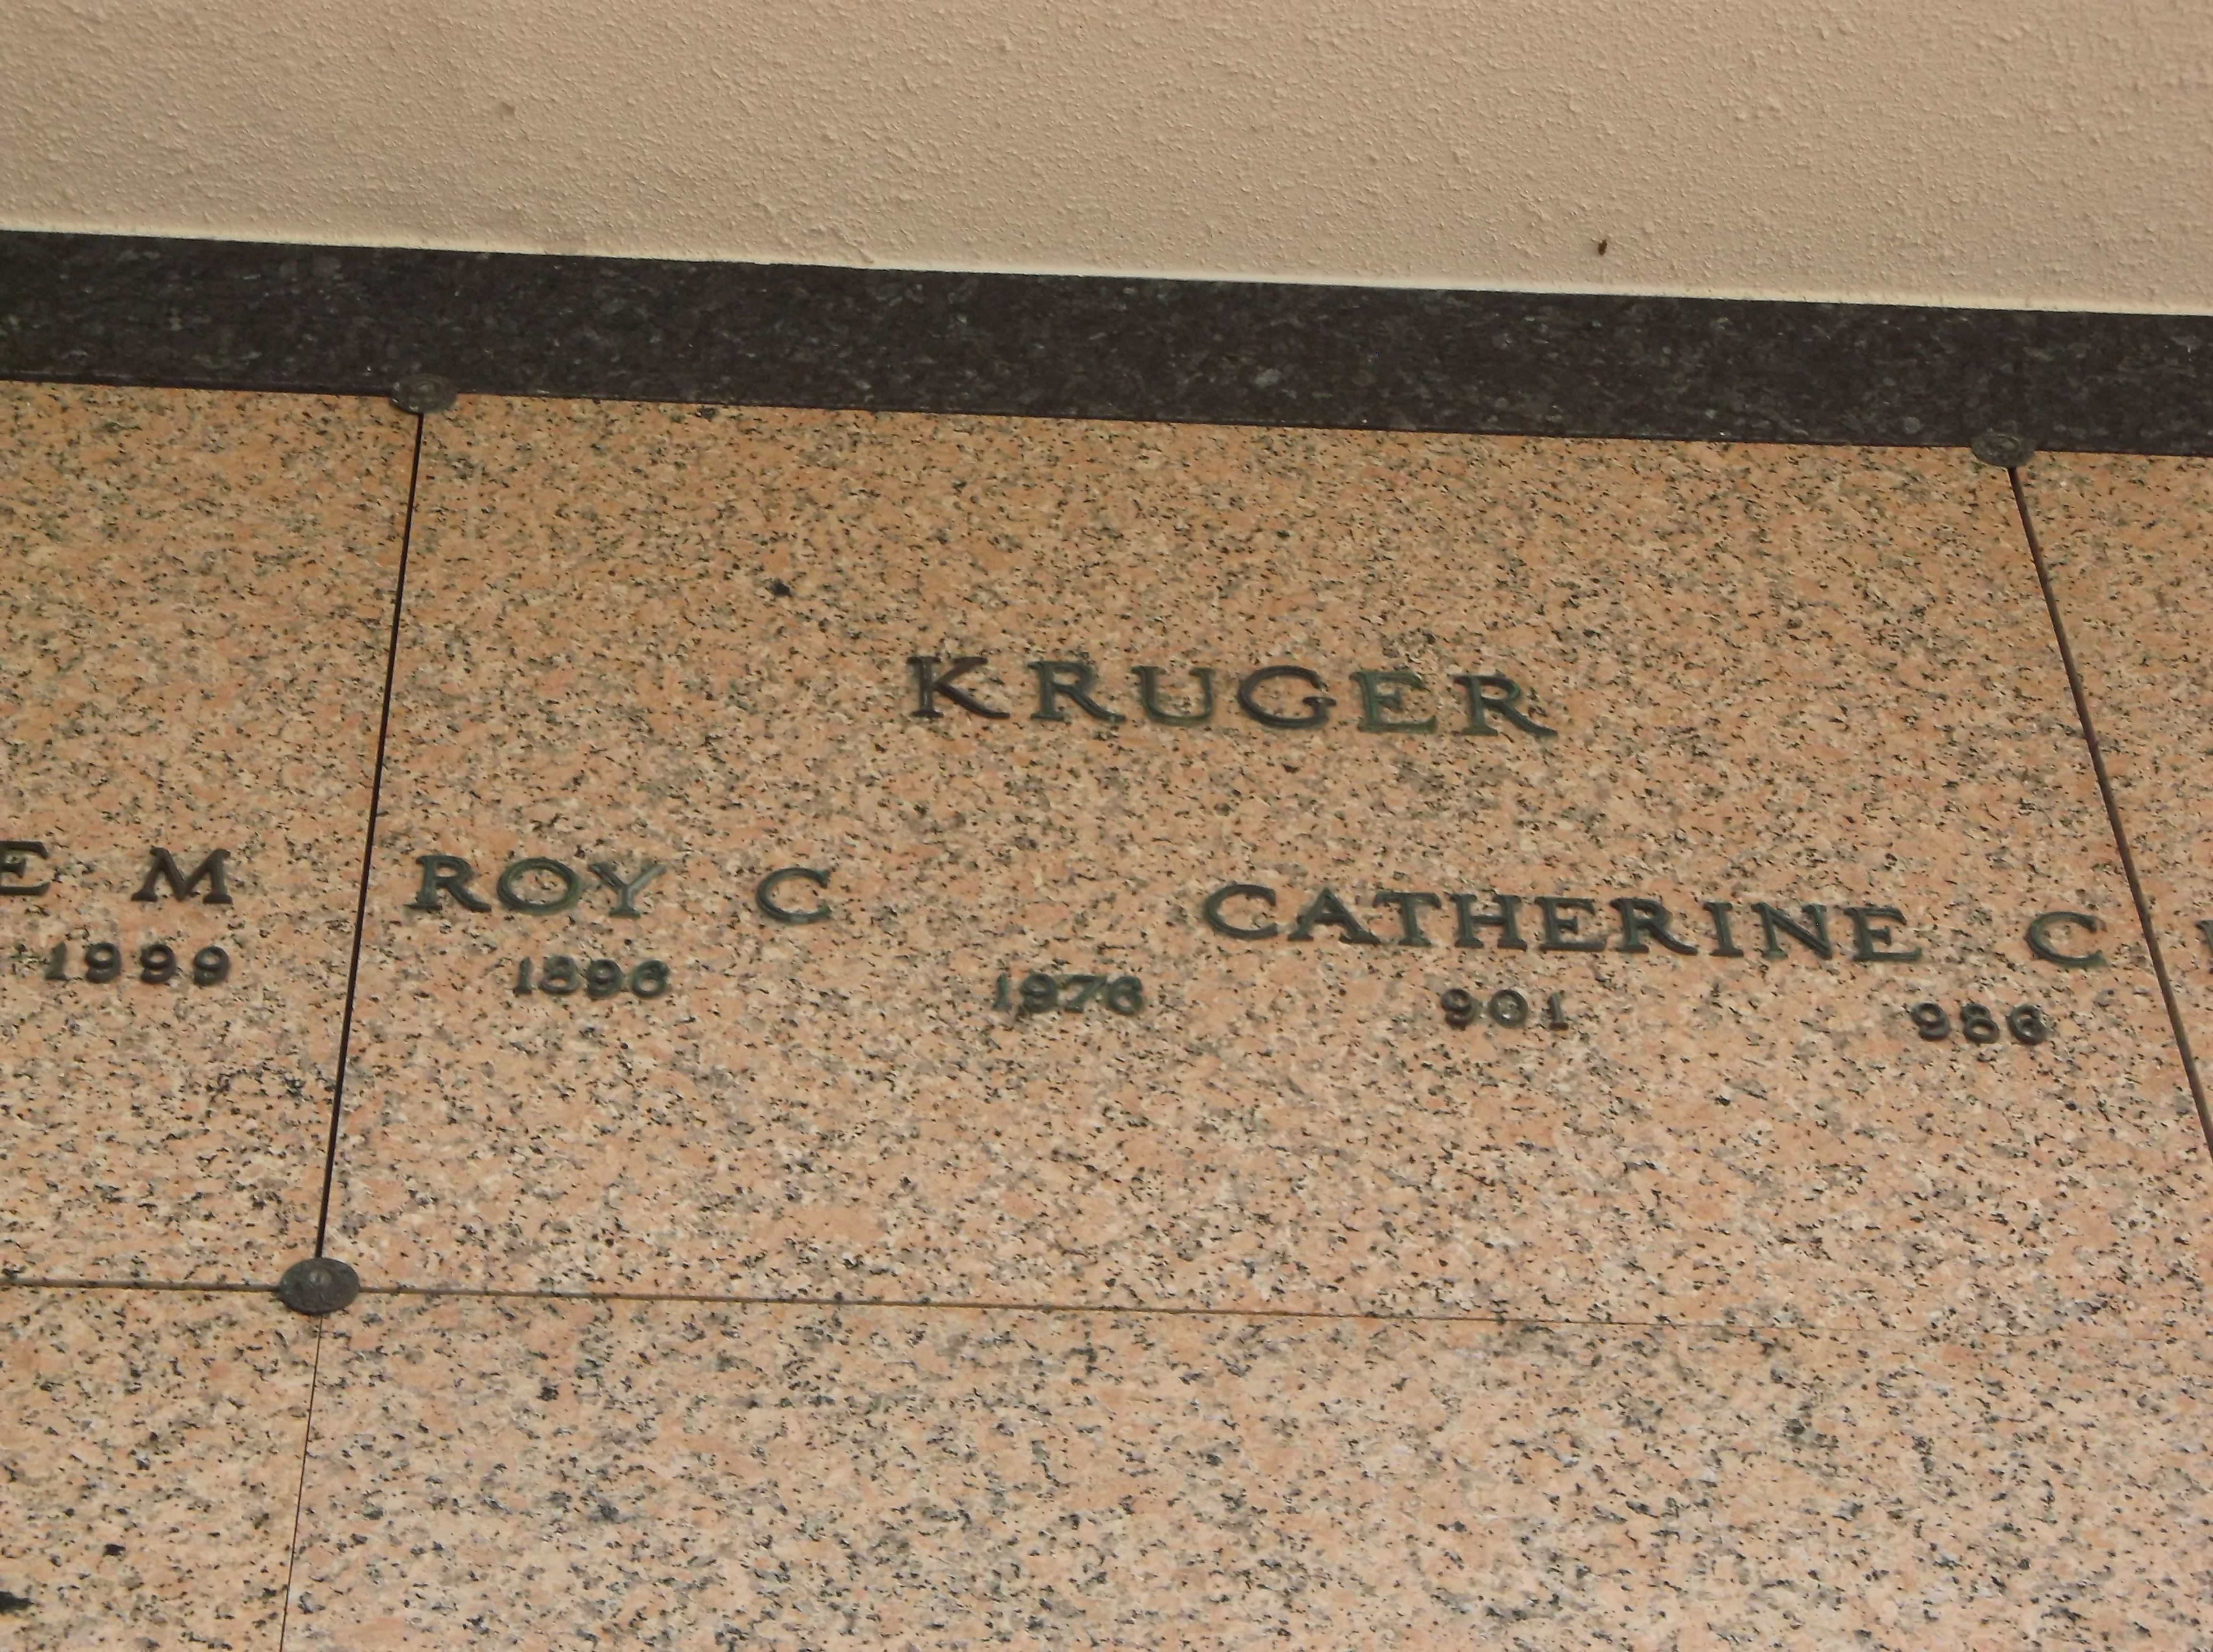 Roy C Kruger